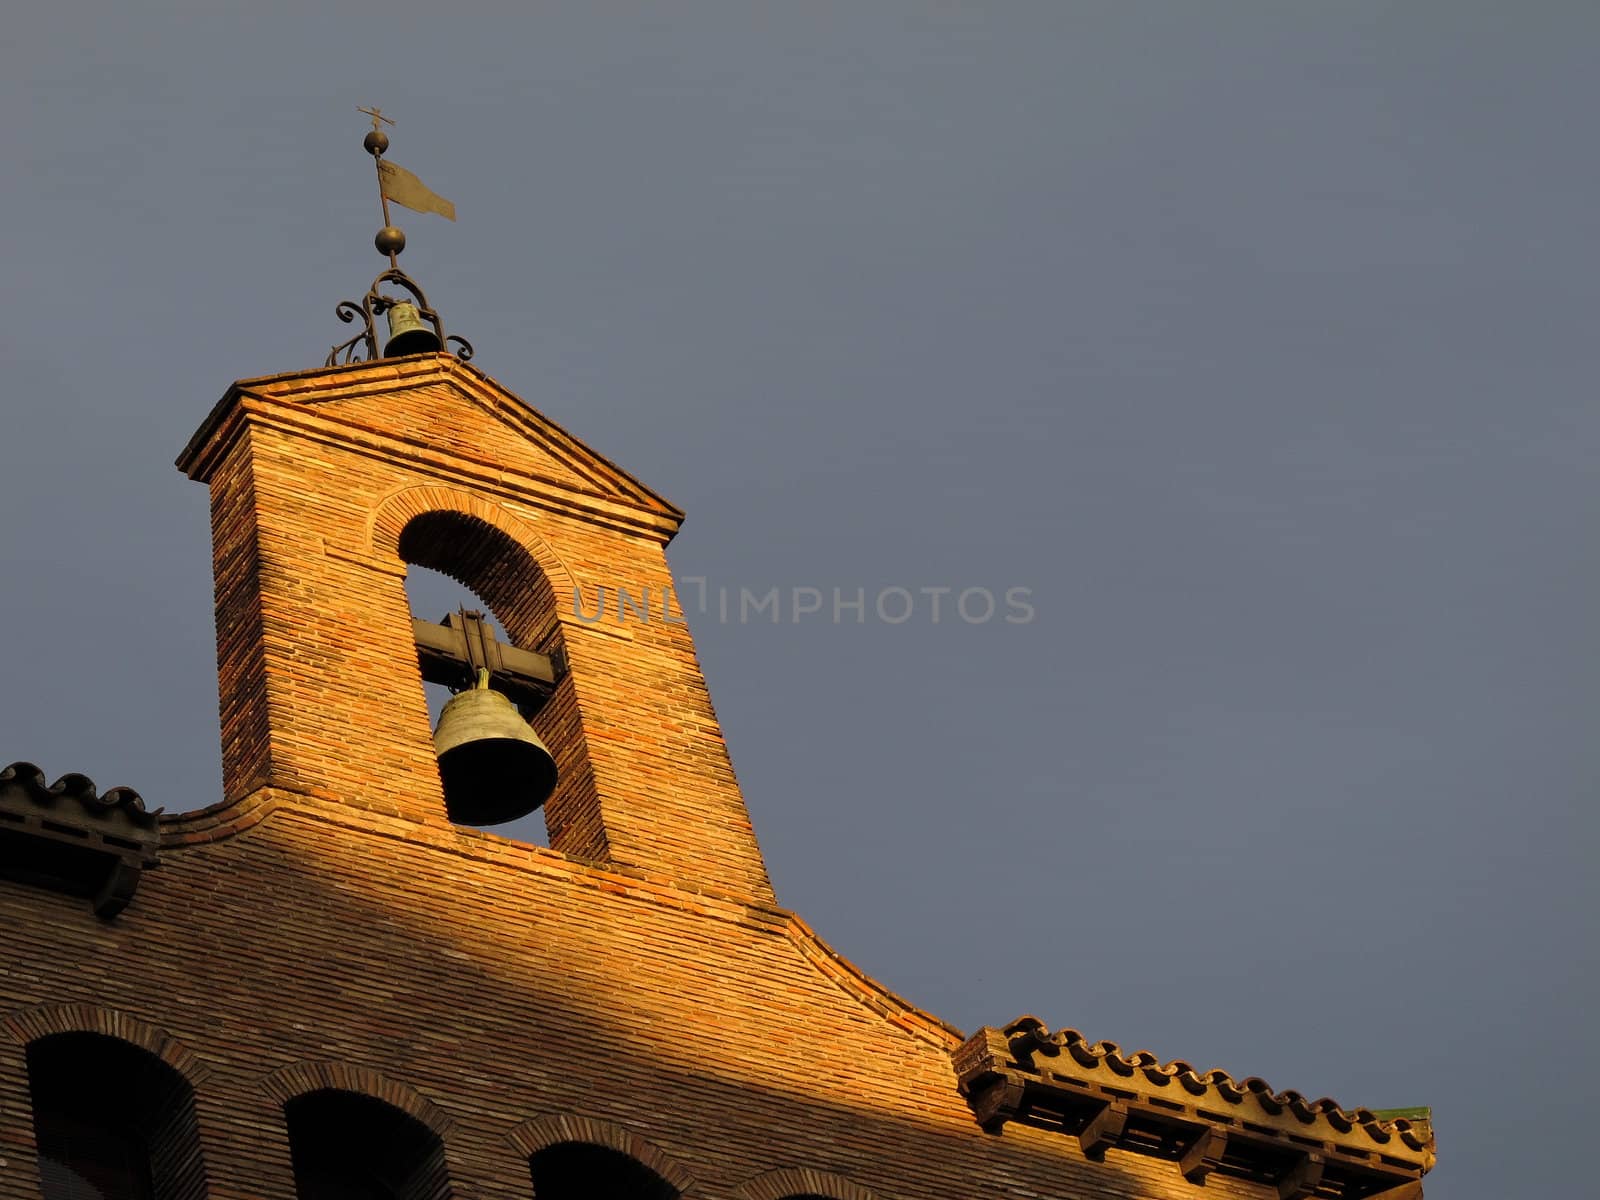 church bell on open belfry tower in warm sunlight